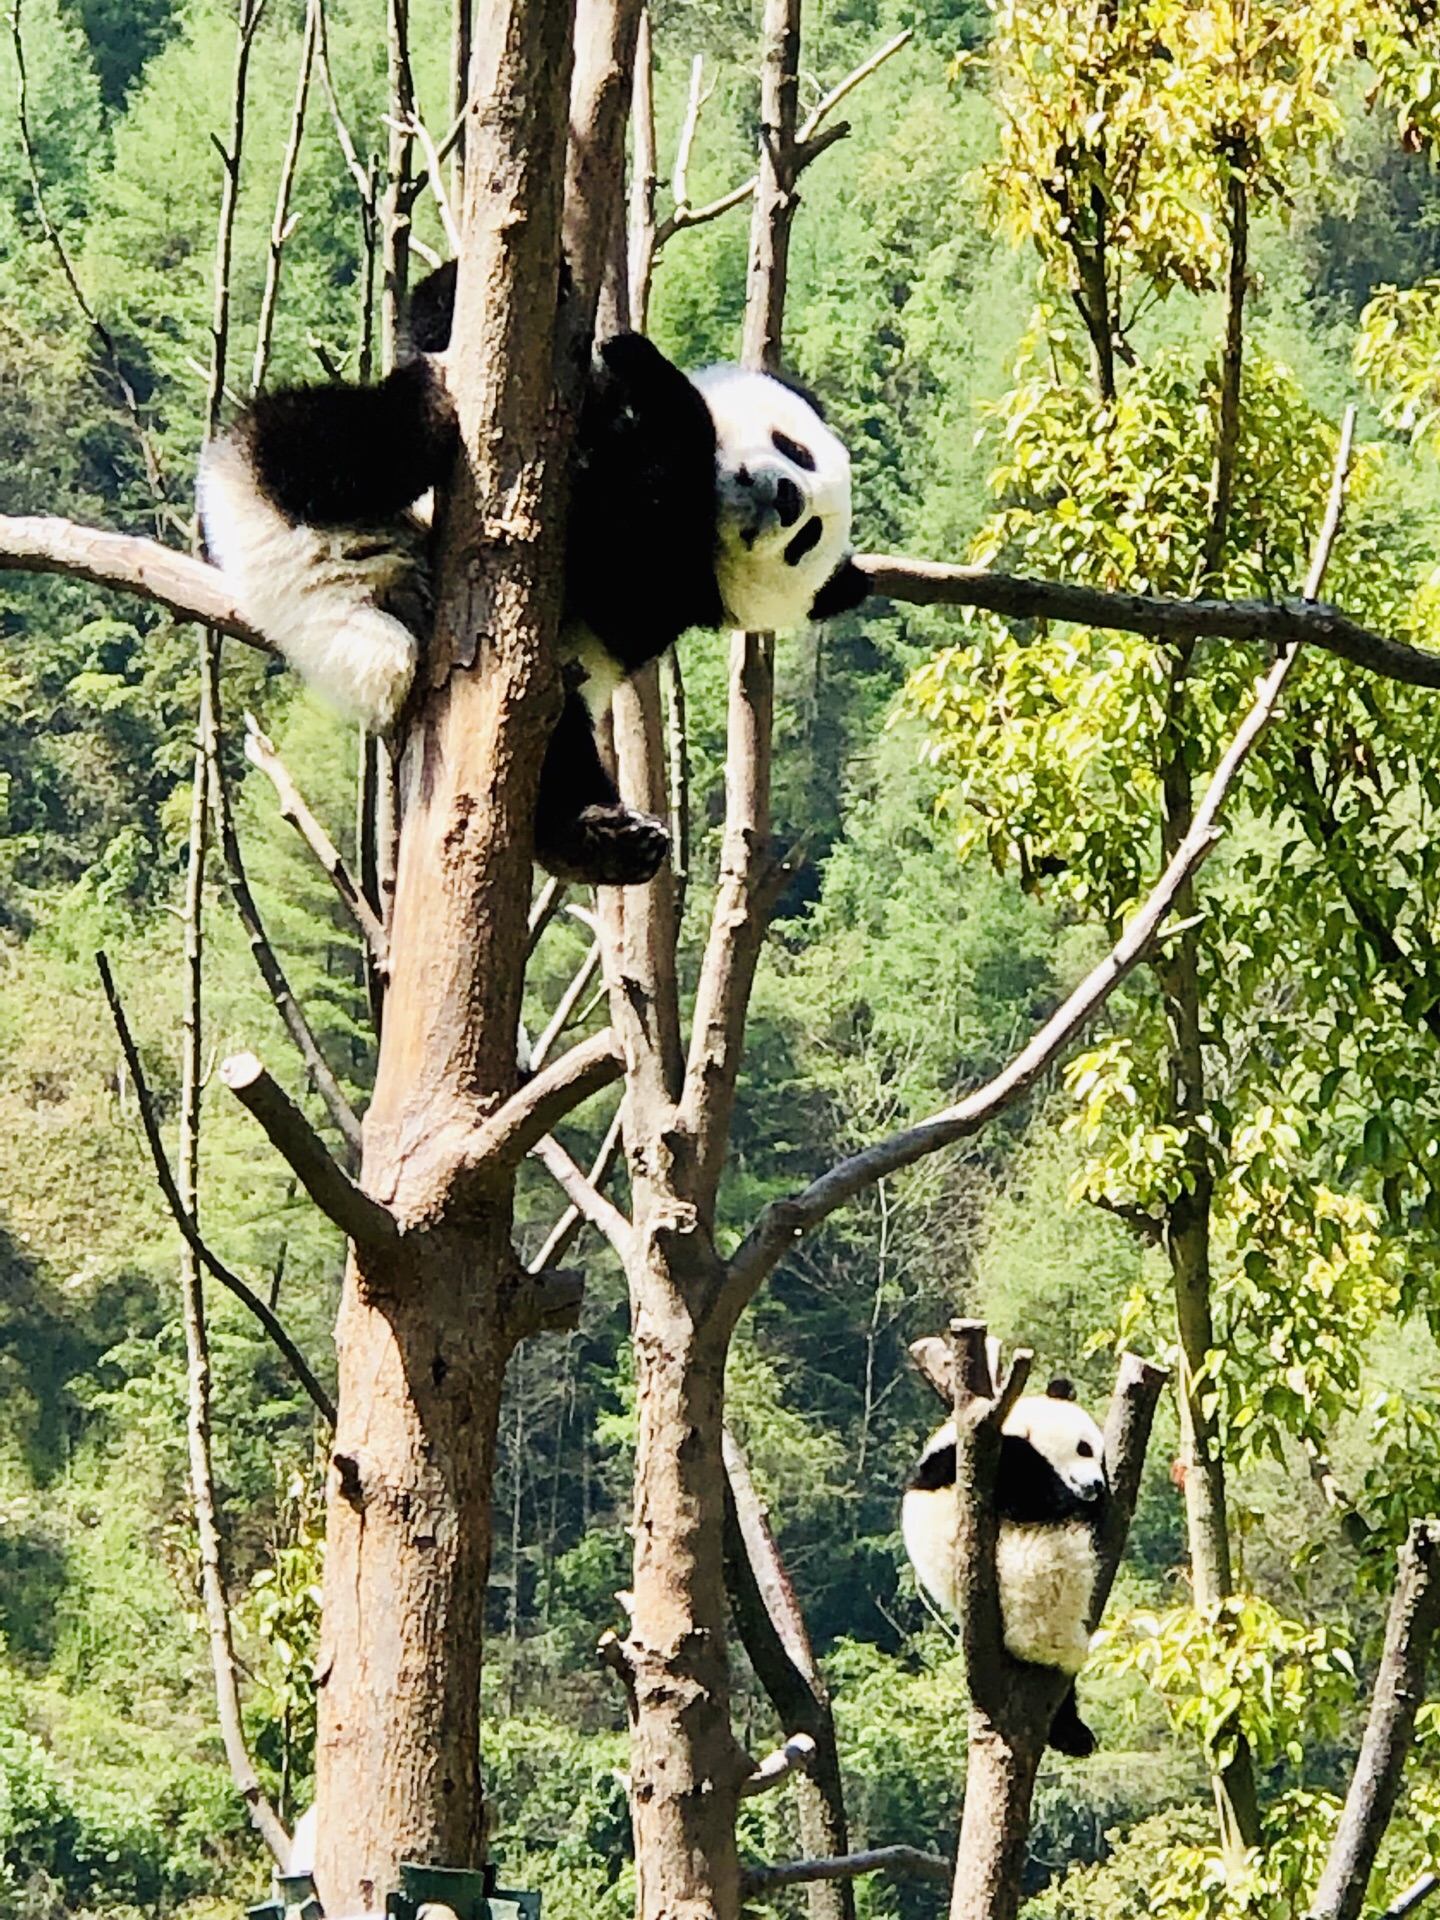 汶川卧龙大熊猫自然保护区攻略,汶川卧龙大熊猫自然保护区门票/游玩攻略/地址/图片/门票价格【携程攻略】